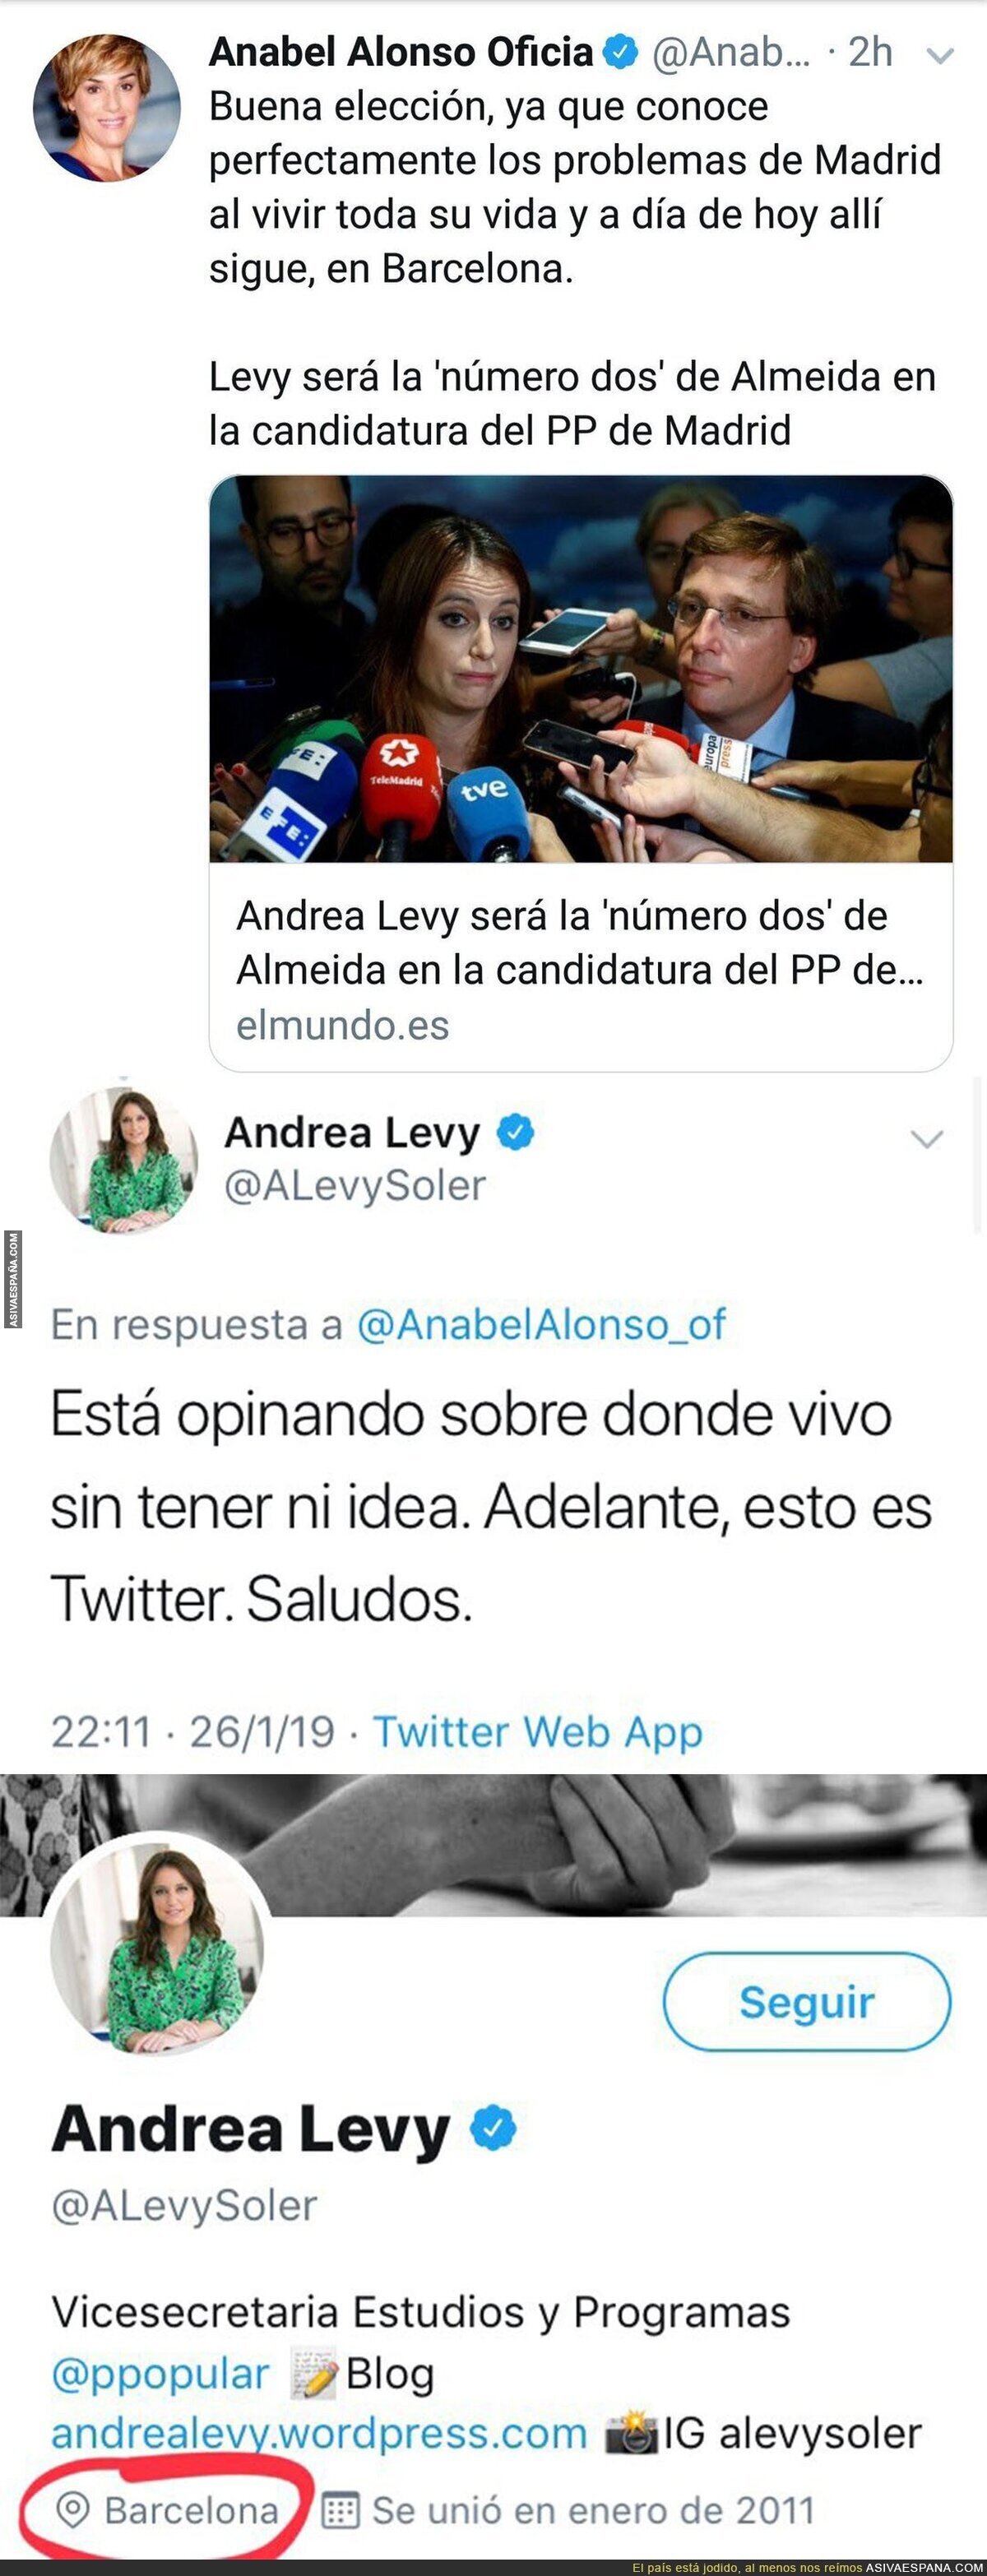 Andrea Levy es elegida para ser la 'número dos' para el ayuntamiento de Madrid y Anabel Alonso la deja por los suelos en Twitter